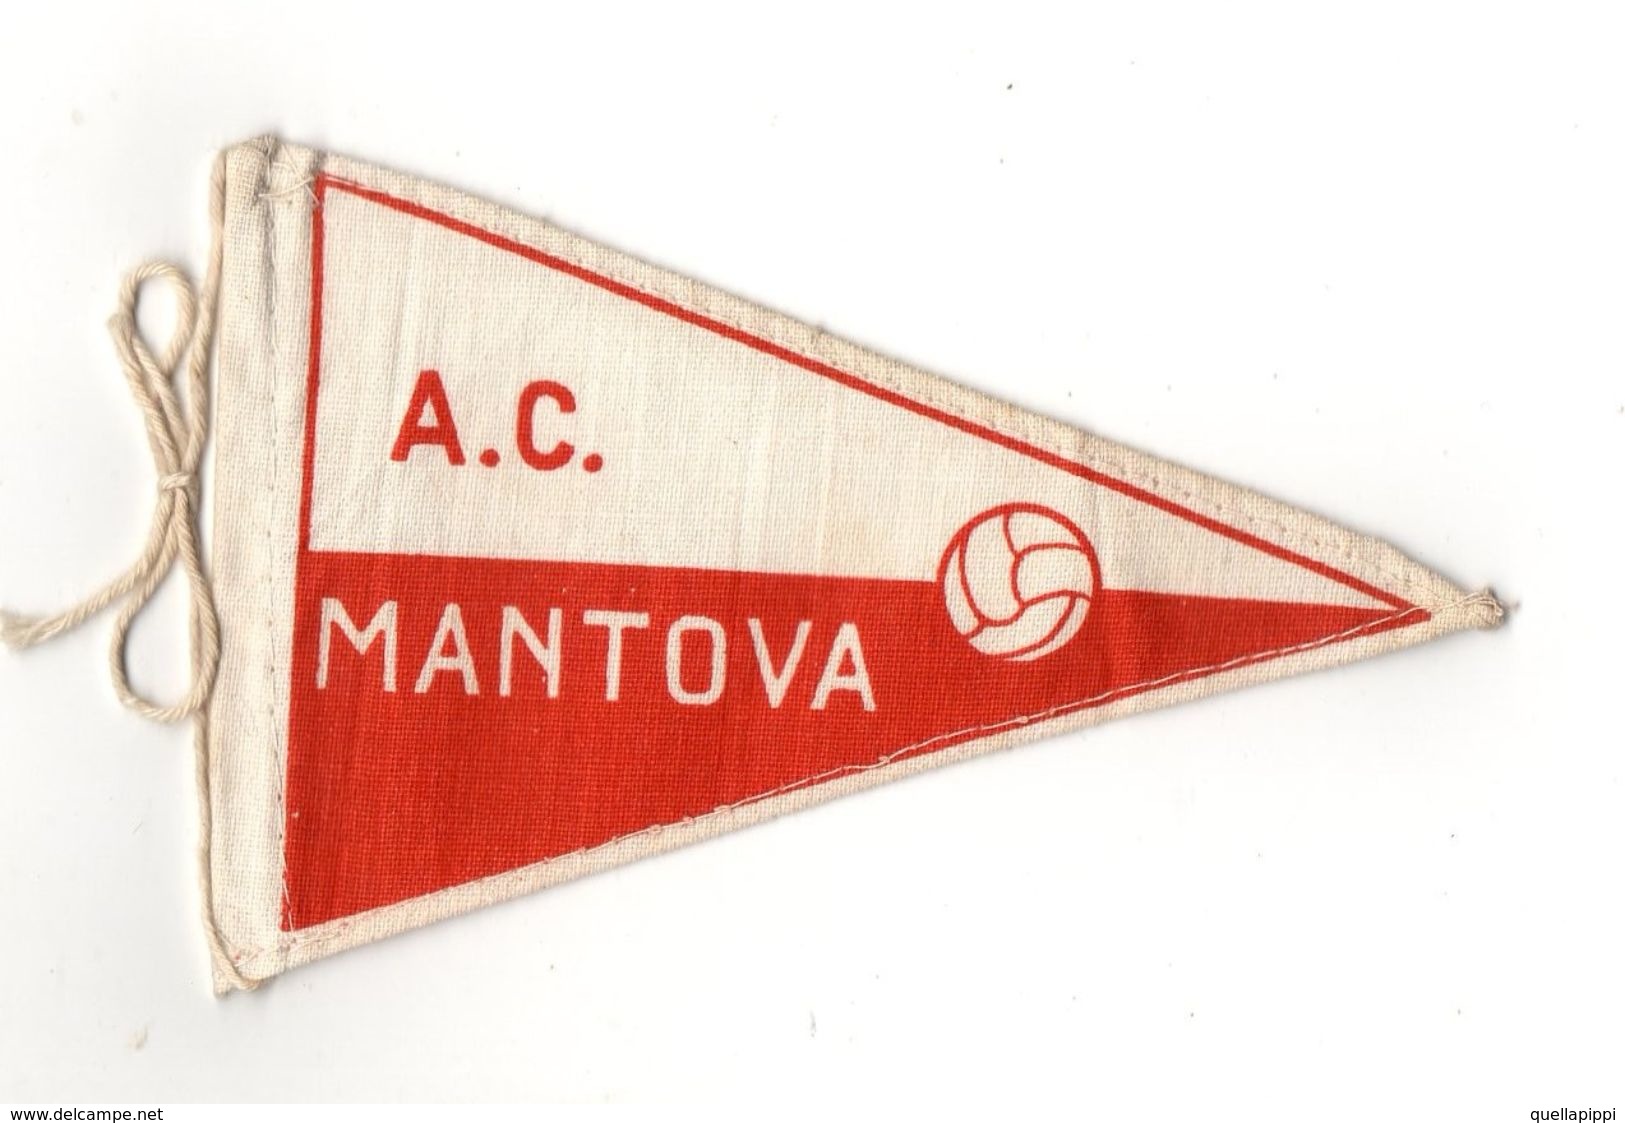 07129 "MANTOVA A.C. FOOTBALL CLUB - BANDIERINA BIFRONTE IN STOFFA CON LEGACCI" ANNI '70 ORIG. - Kleding, Souvenirs & Andere